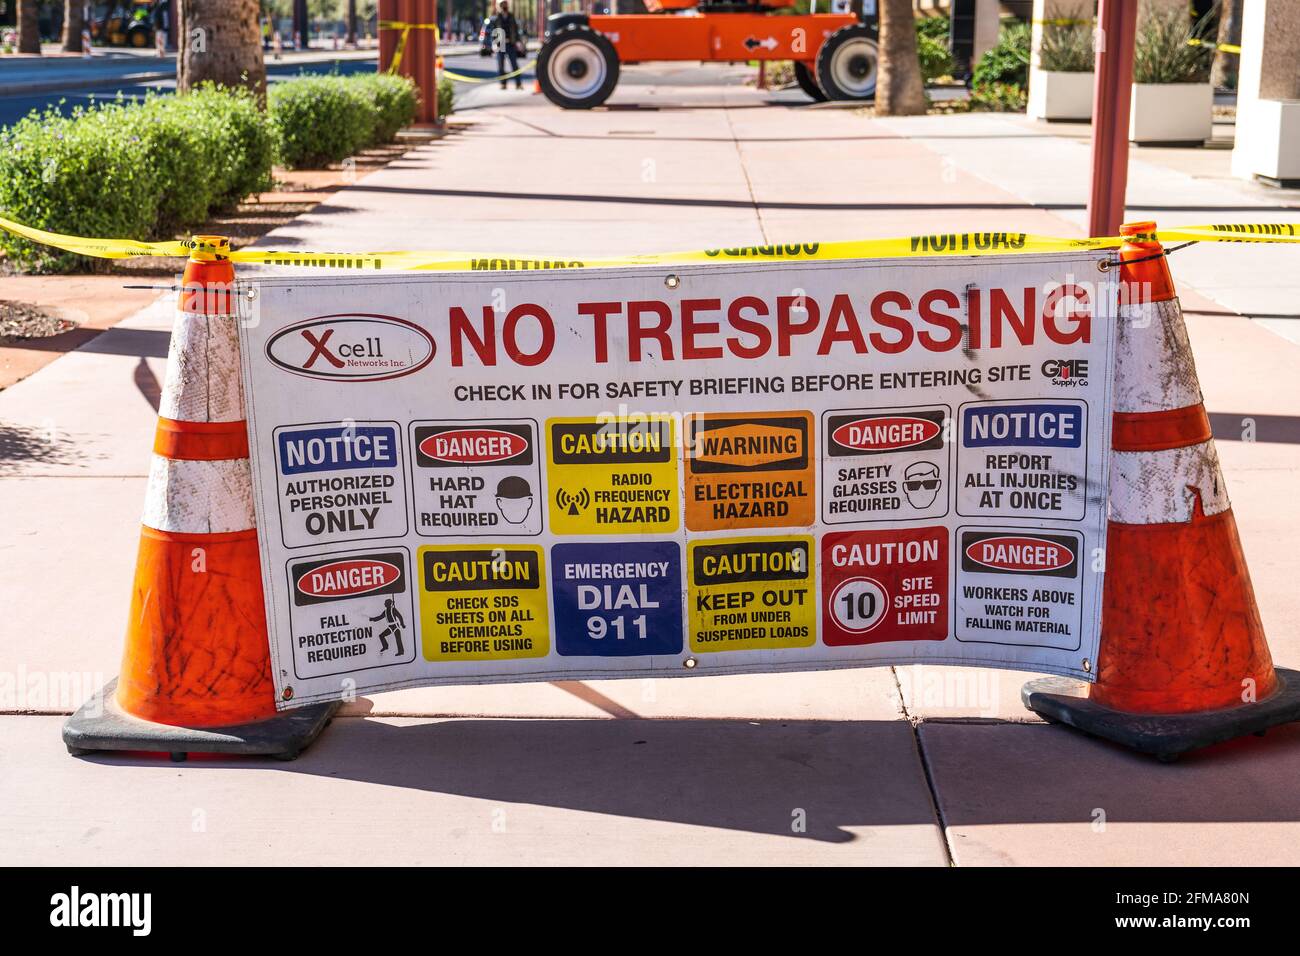 Phoenix, AZ - 20. März 2021: An diesem Arbeitsplatz sind keine Trespassing sowie viele Warnschilder angebracht. Stockfoto